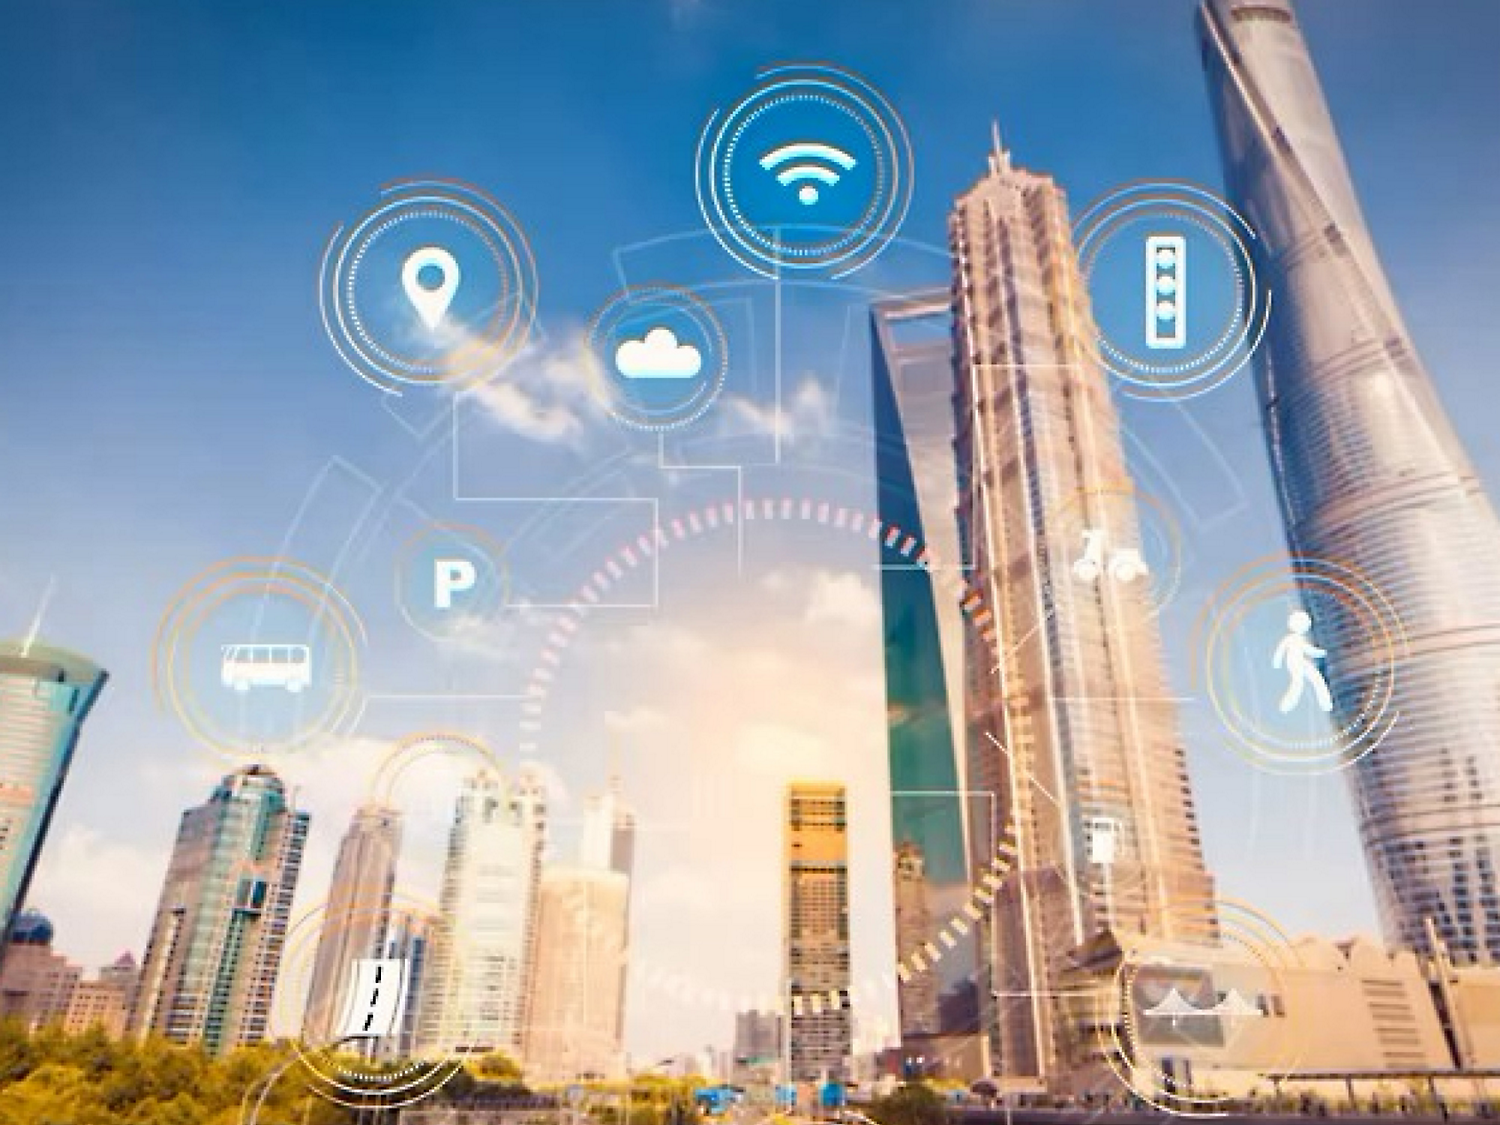 ภาพประกอบของเมืองอัจฉริยะที่มีไอคอนดิจิทัลแสดง Wi-Fi คอมพิวเตอร์ระบบคลาวด์ และเทคโนโลยีอื่นๆ ที่มีตึกระฟ้า